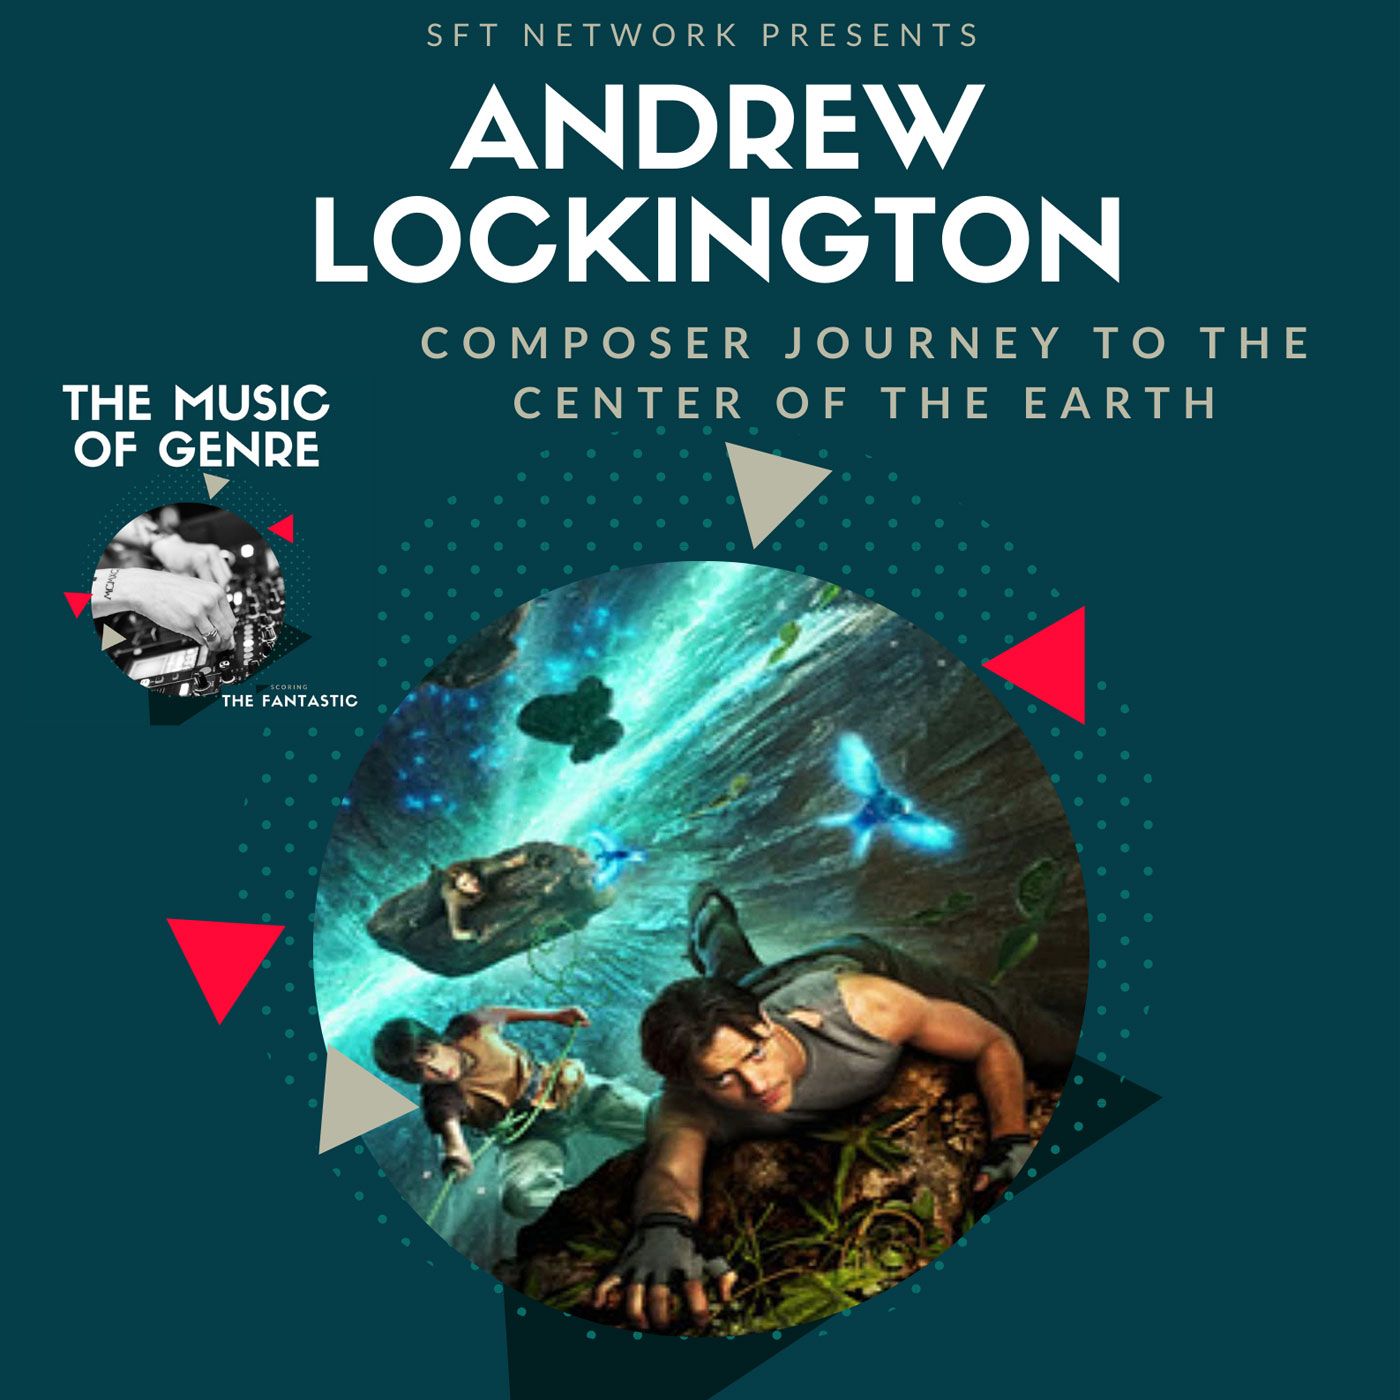 Andrew Lockington